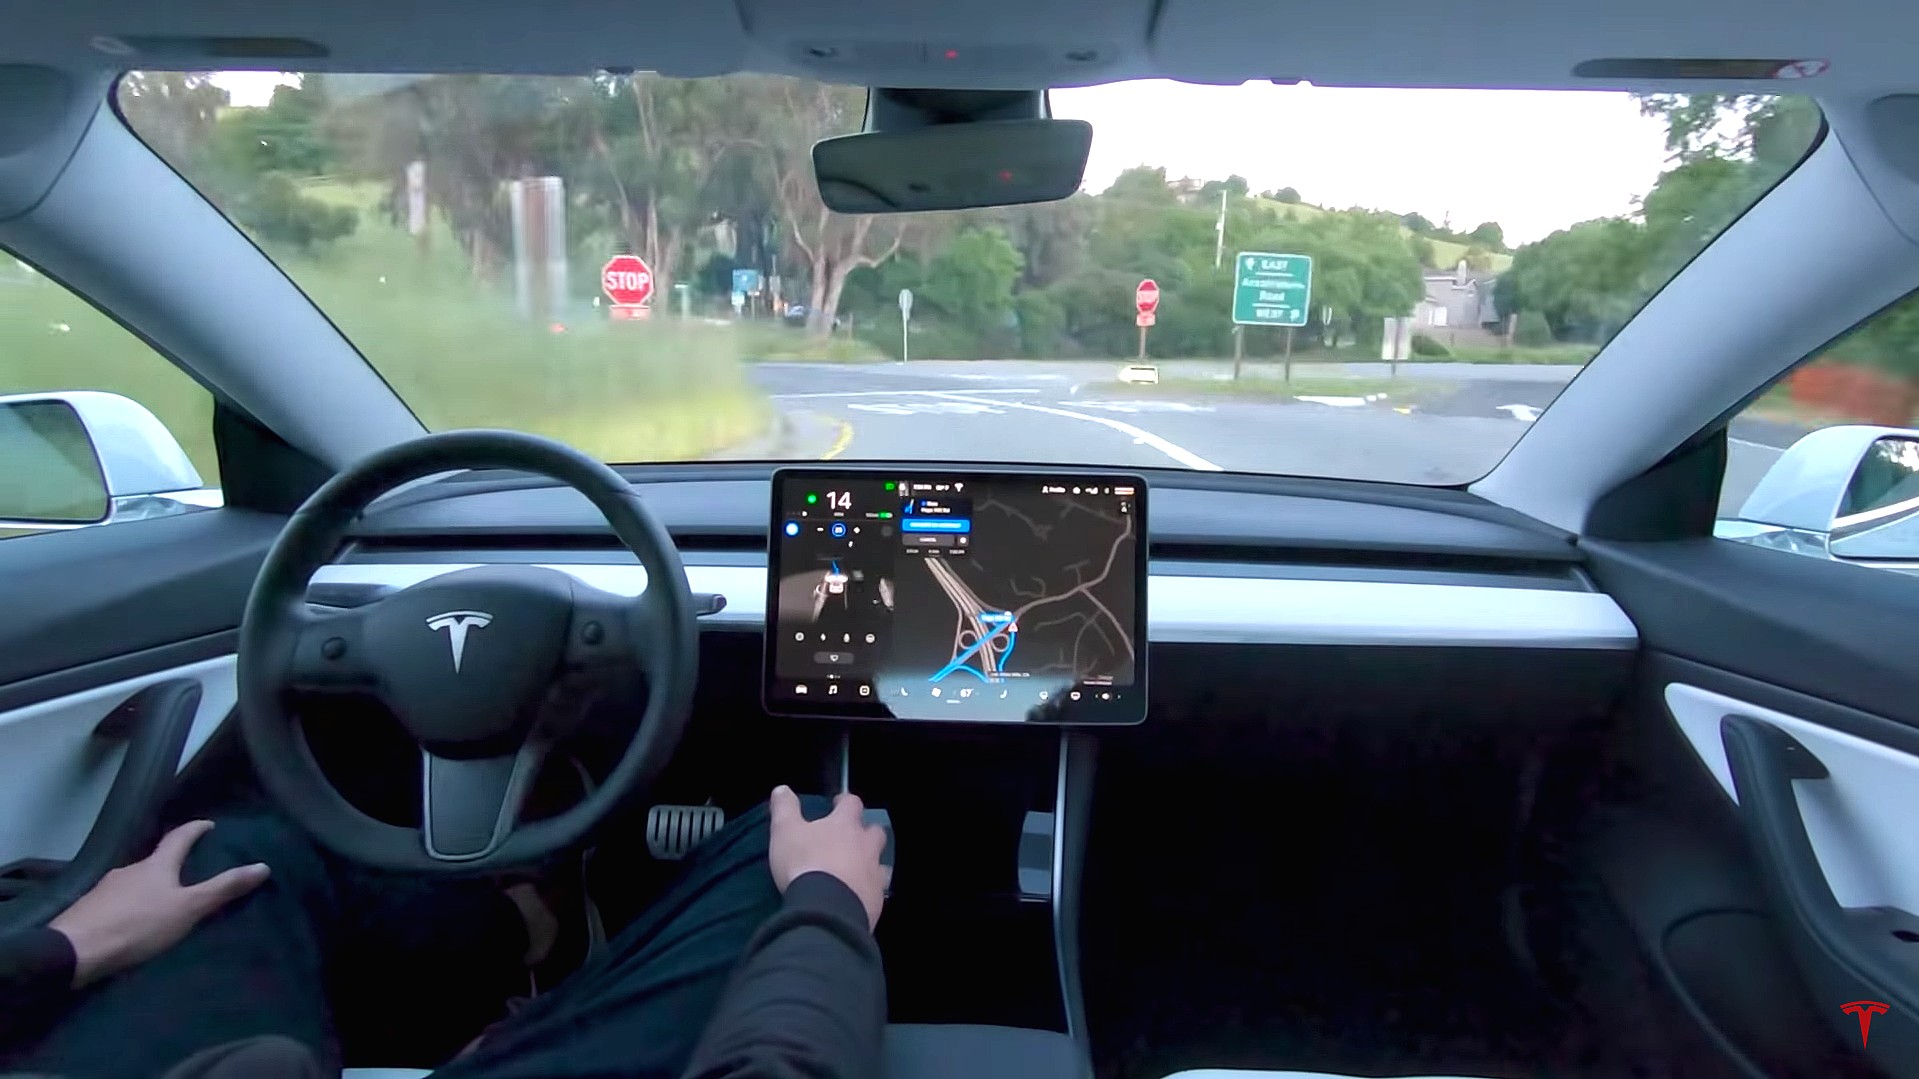 ການສະໝັກໃຊ້ Tesla Full Self-Driving ແມ່ນມີຢູ່ແລ້ວ, ແຕ່ເຮັດໃຫ້ເກີດຄວາມບໍ່ສະດວກບາງຢ່າງໃຫ້ກັບຜູ້ໃຊ້